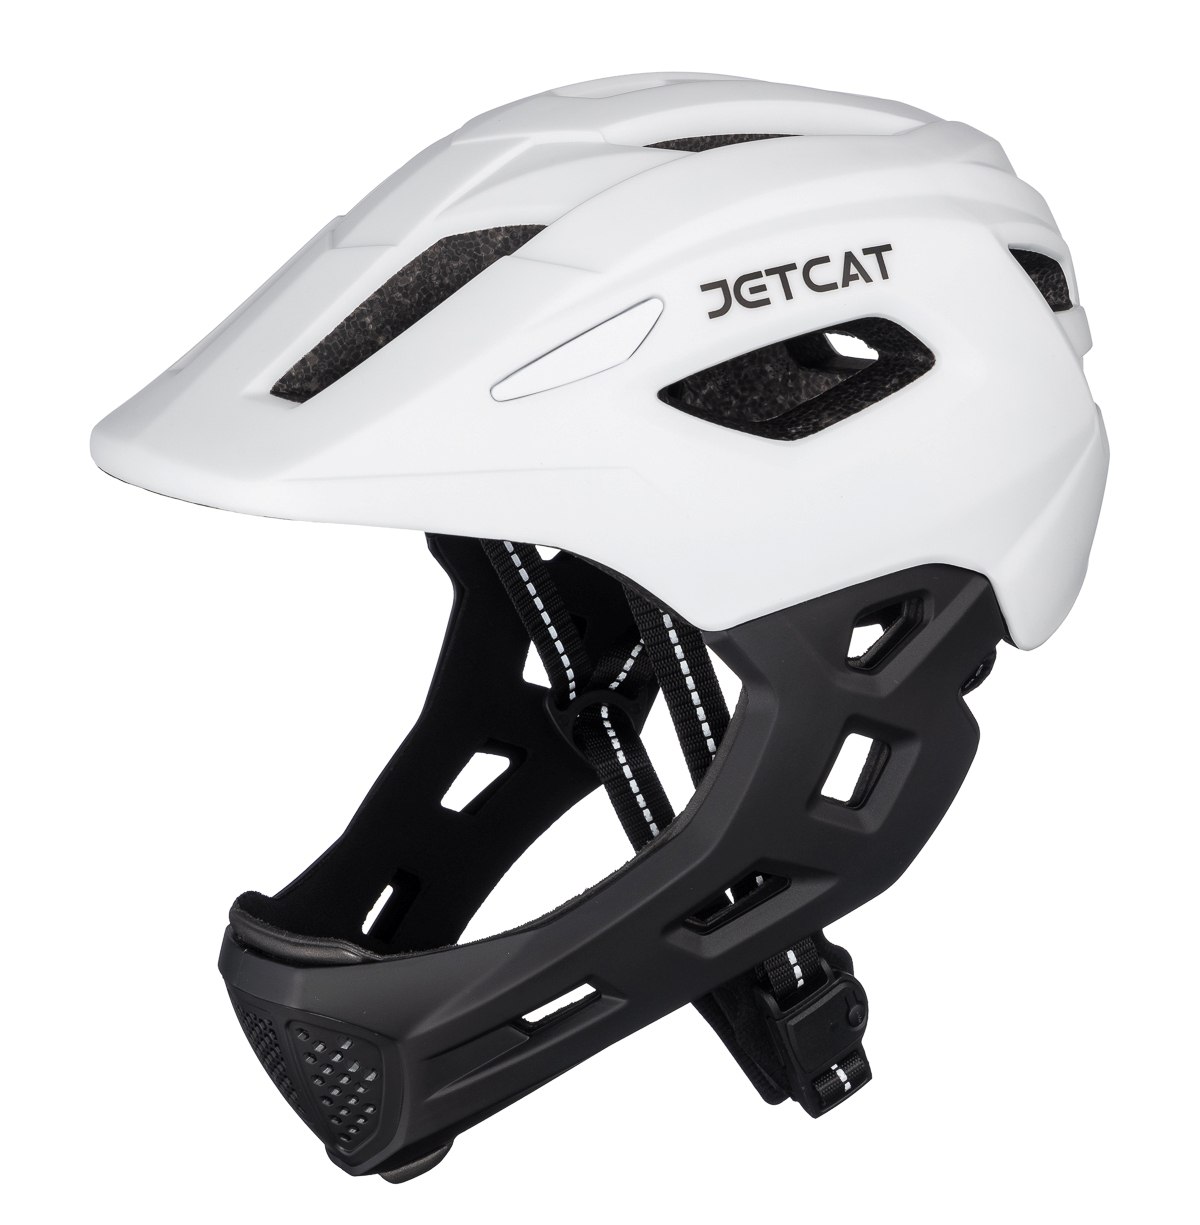 Шлем защитный детский JetCat Start White/Black размер S 52-56 см велосипедный роликовые коньки раздвижные alpha caprice шлем набор защиты в сумке ac sporter black s